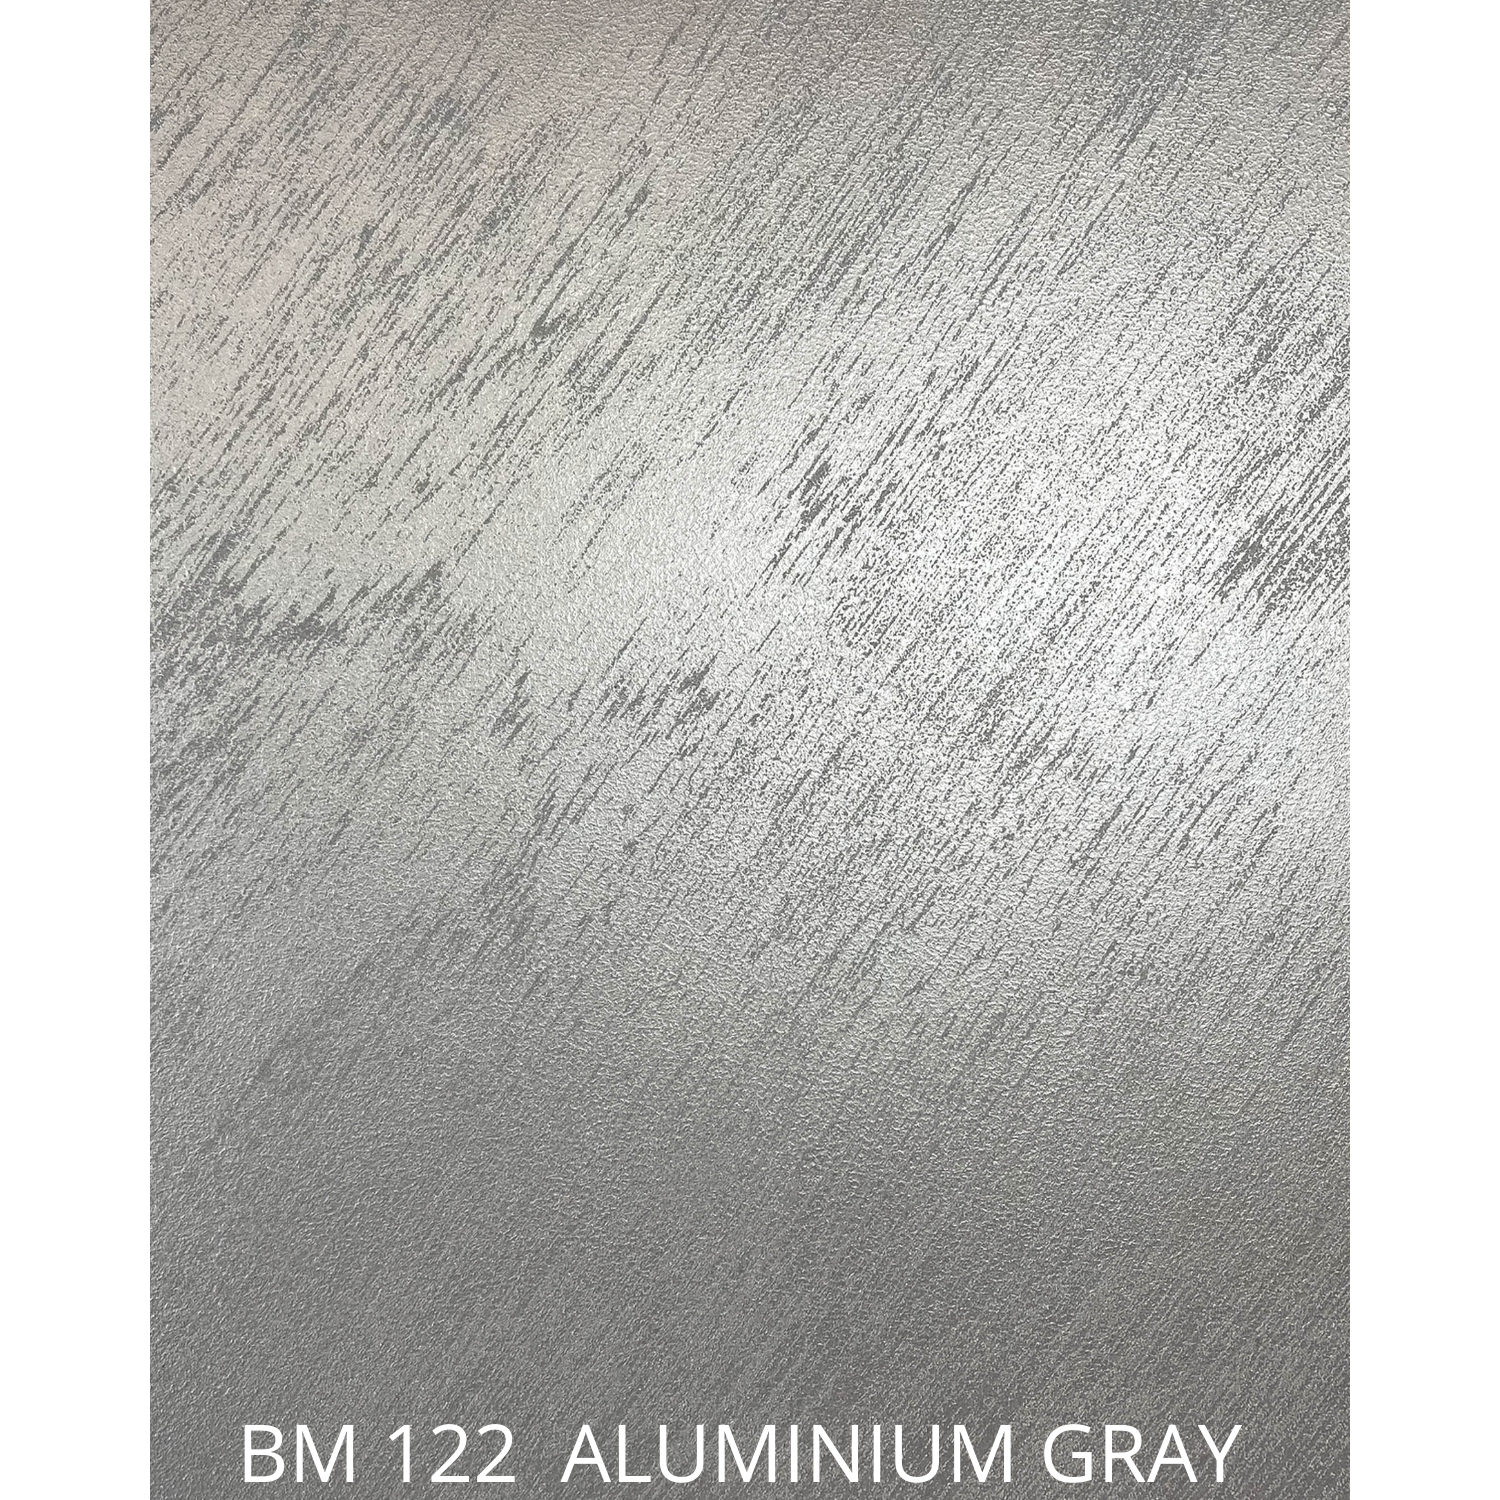 BM122 aluminium gray